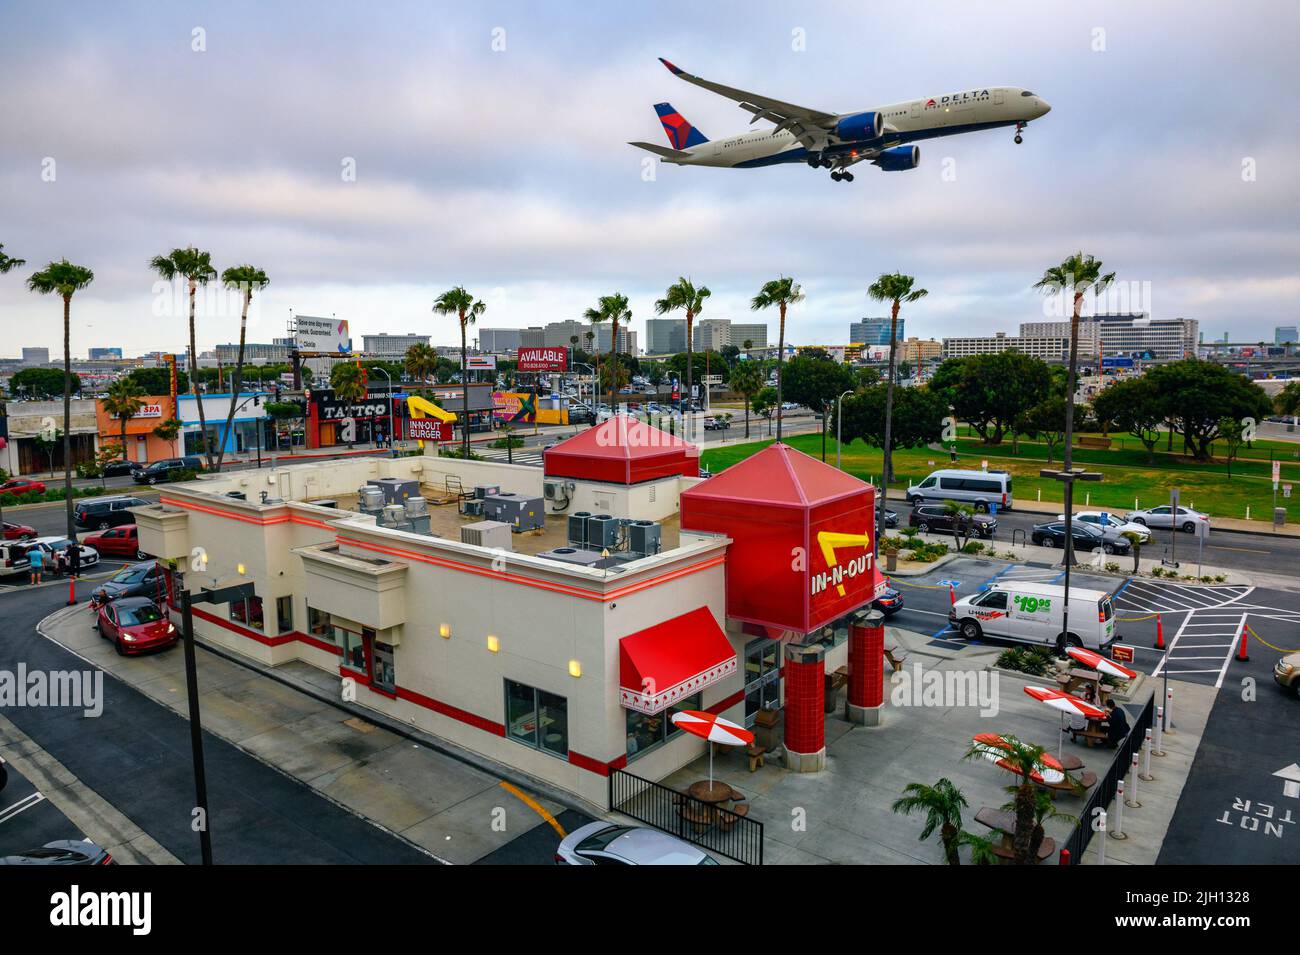 L'aereo Delta Airlines vola sopra il ristorante in-N-out Burger mentre atterra all'aeroporto internazionale di Los Angeles LAX Foto Stock